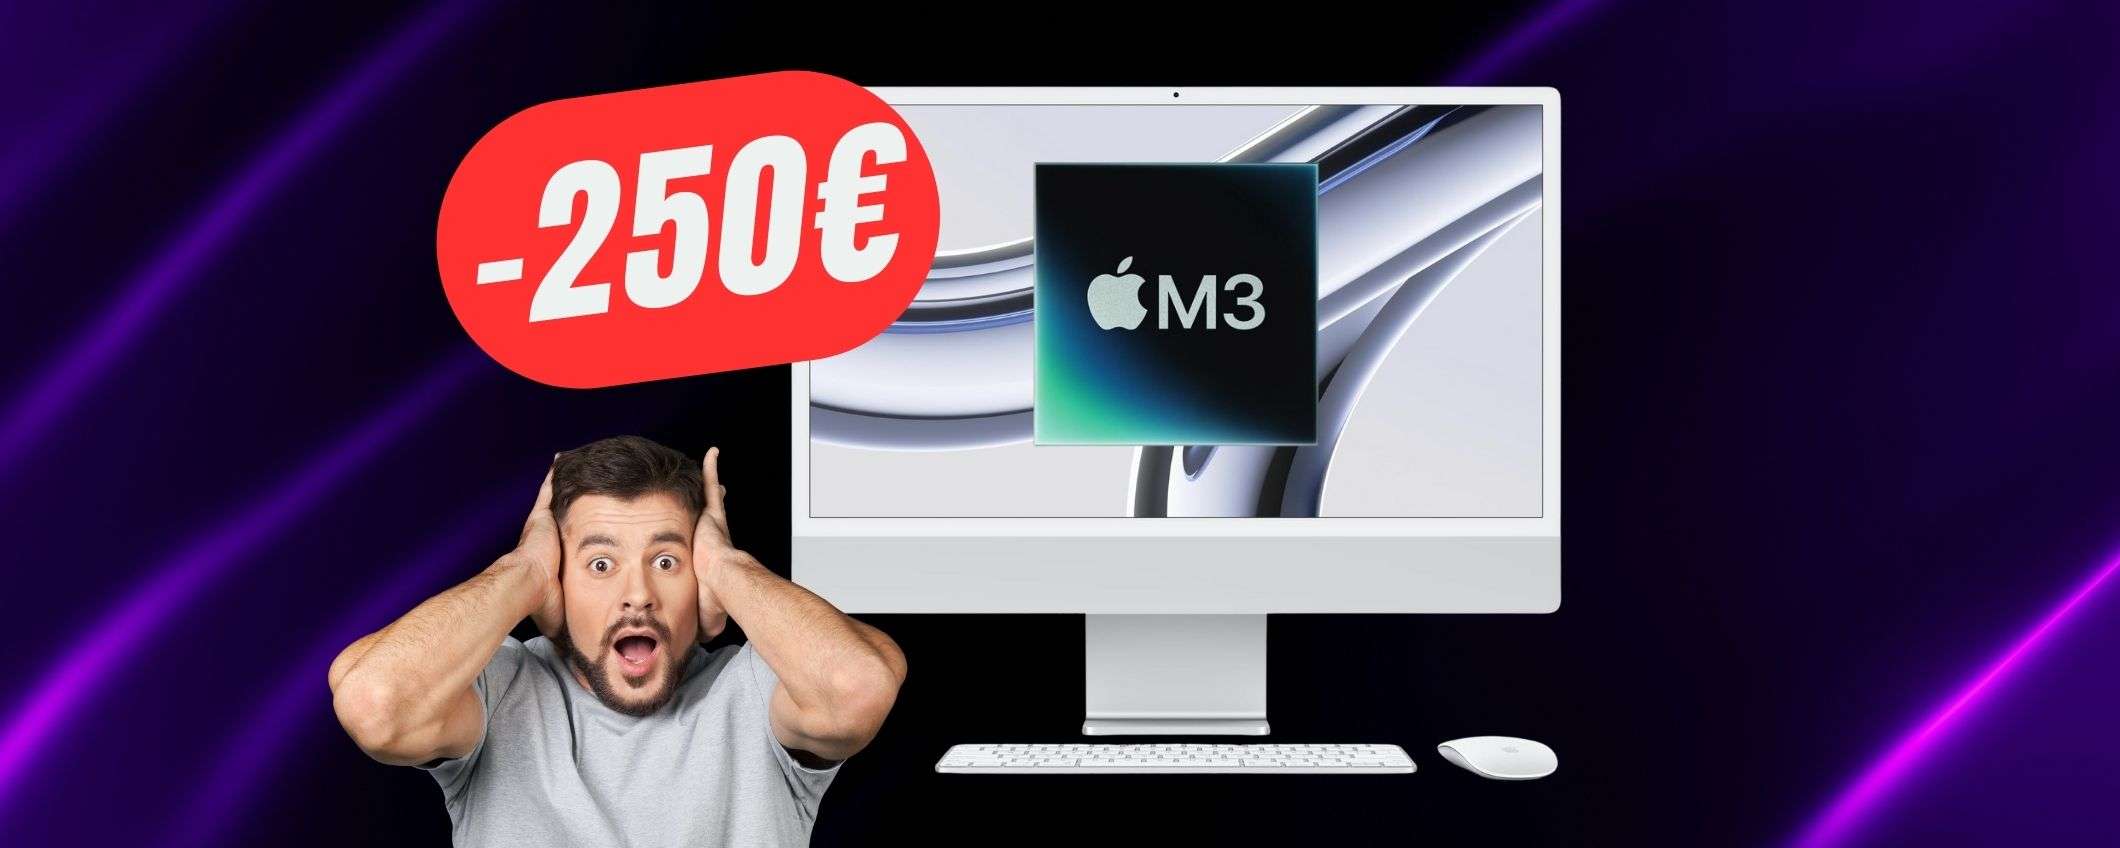 SCONTO di -250€ per l'iMac con chip M3 di Apple!